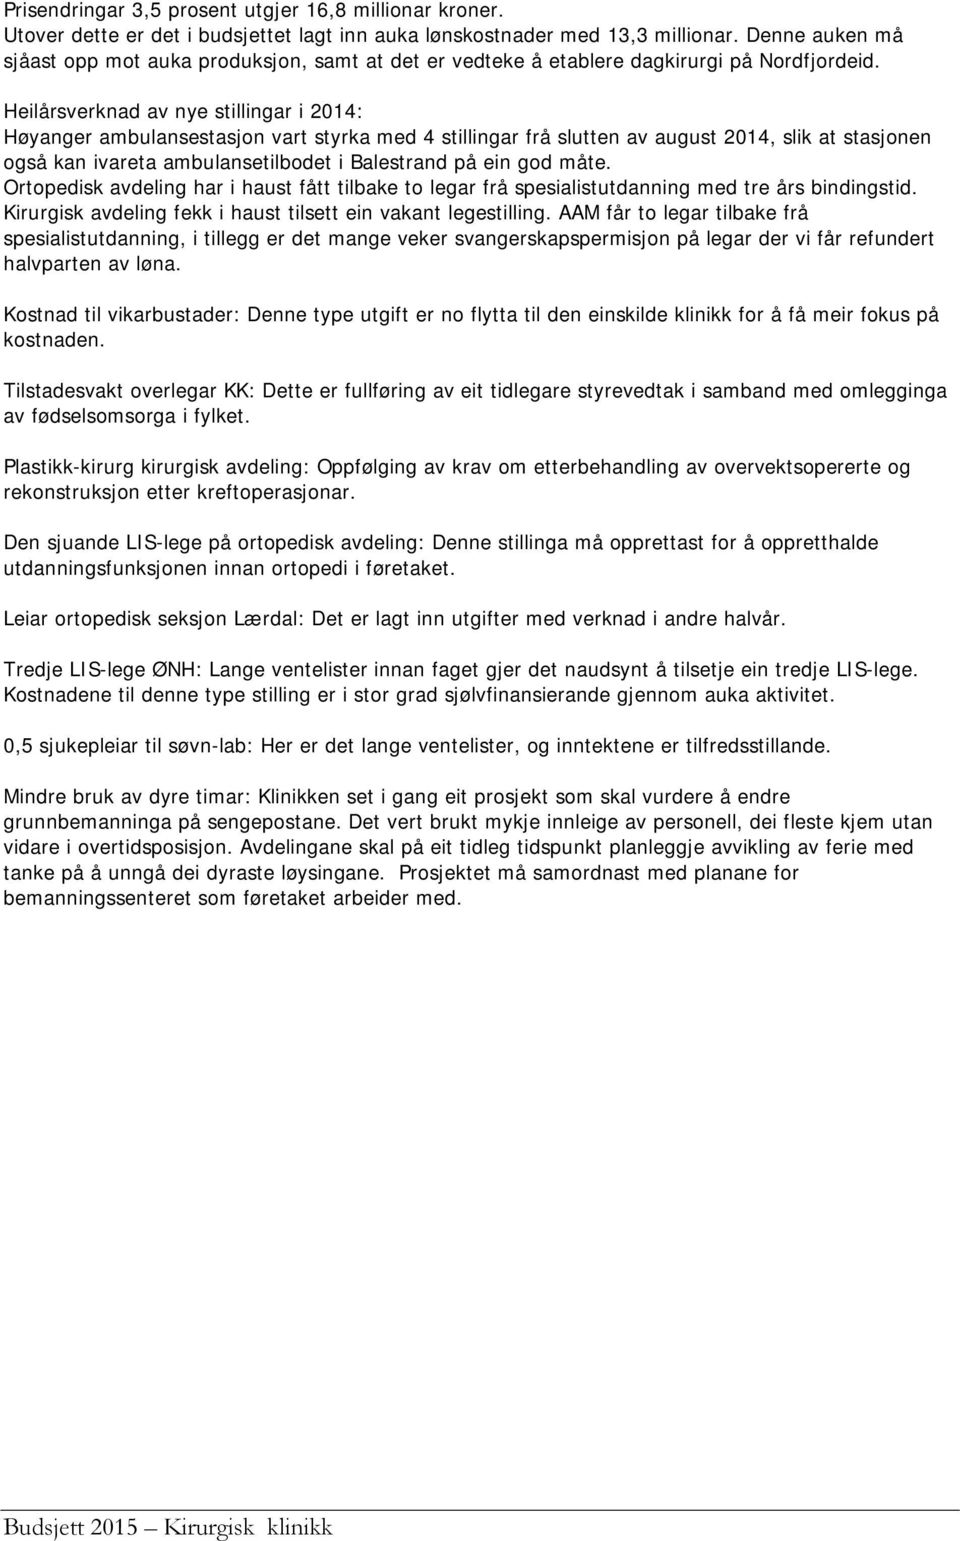 Heilårsverknad av nye stillingar i 2014: Høyanger ambulansestasjon vart styrka med 4 stillingar frå slutten av august 2014, slik at stasjonen også kan ivareta ambulansetilbodet i Balestrand på ein